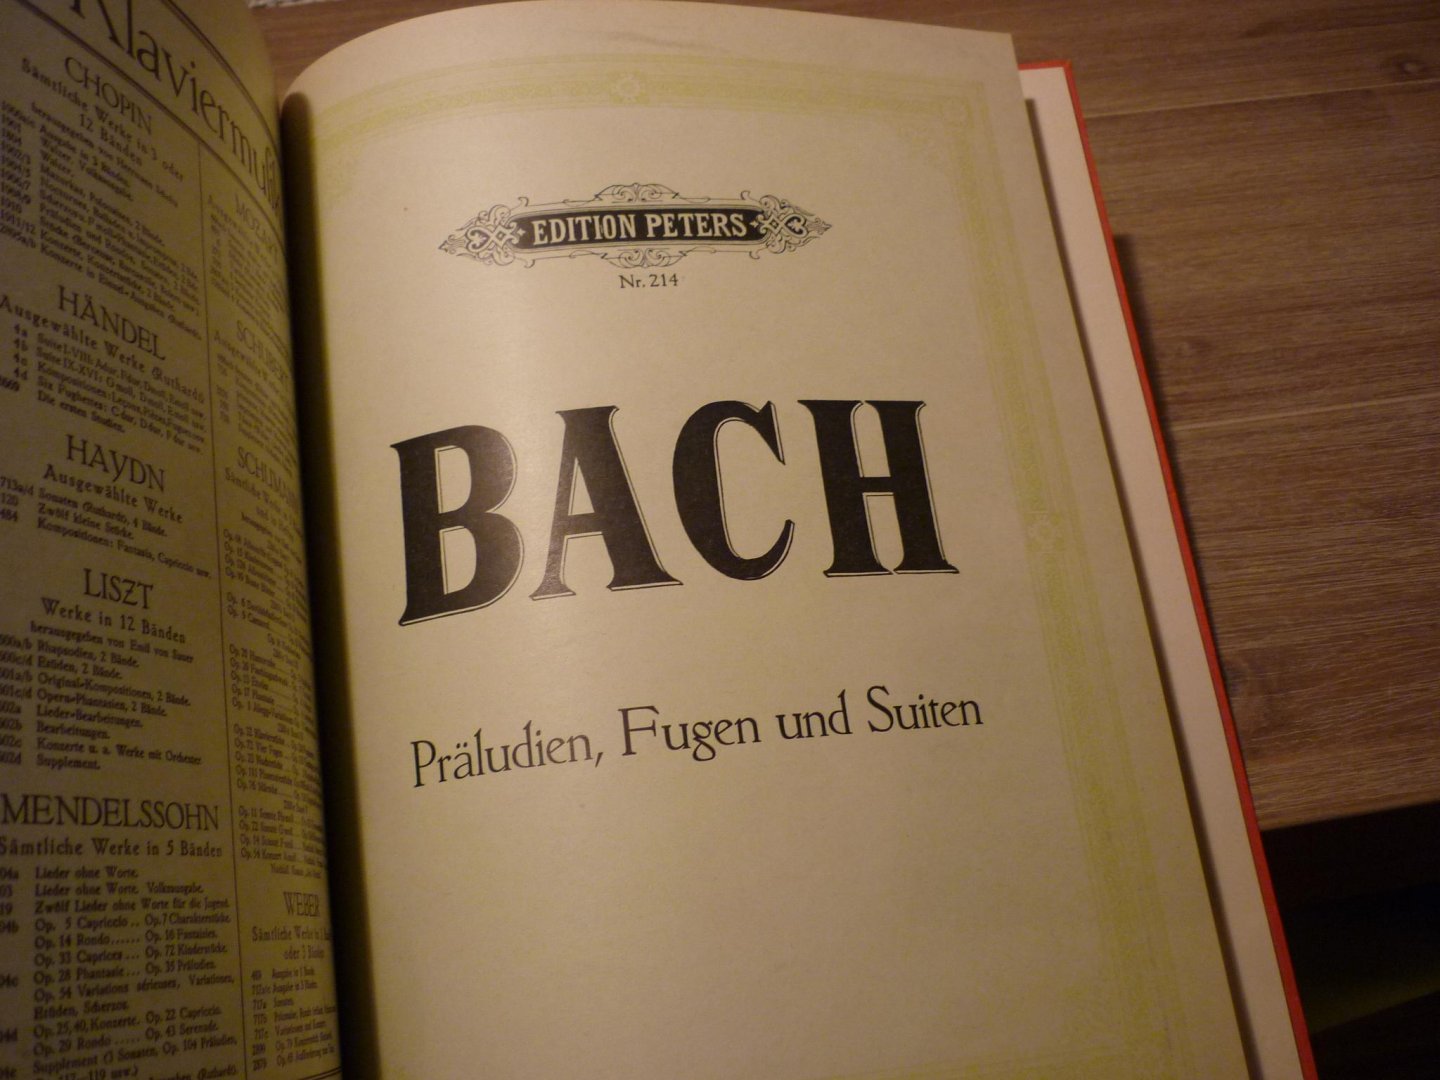 Bach; J. S. (1685-1750) - Italienisches Konzert  / Chromatische Fantasie und Fuge / Fantasie  / Präludium und Fuge a-Moll  //   Praludien, Fugen und Suiten